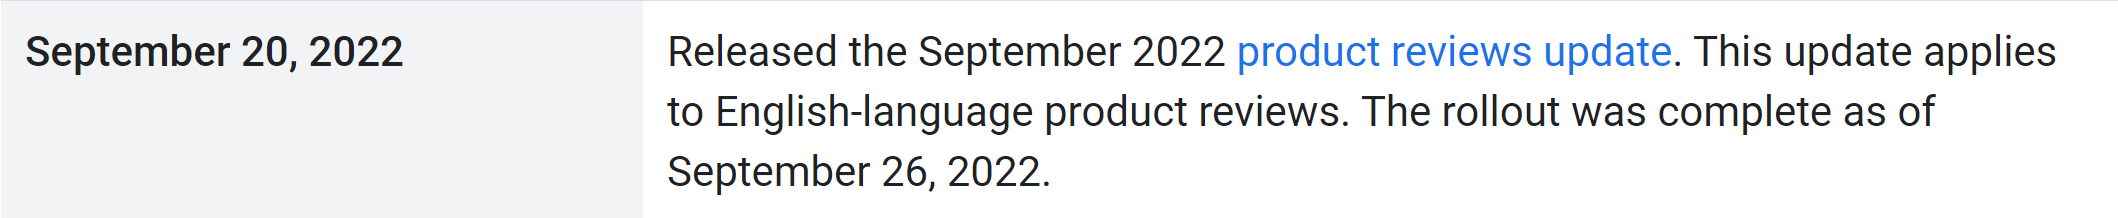 Google September 2022 Product Reviews Update ist abgeschlossen